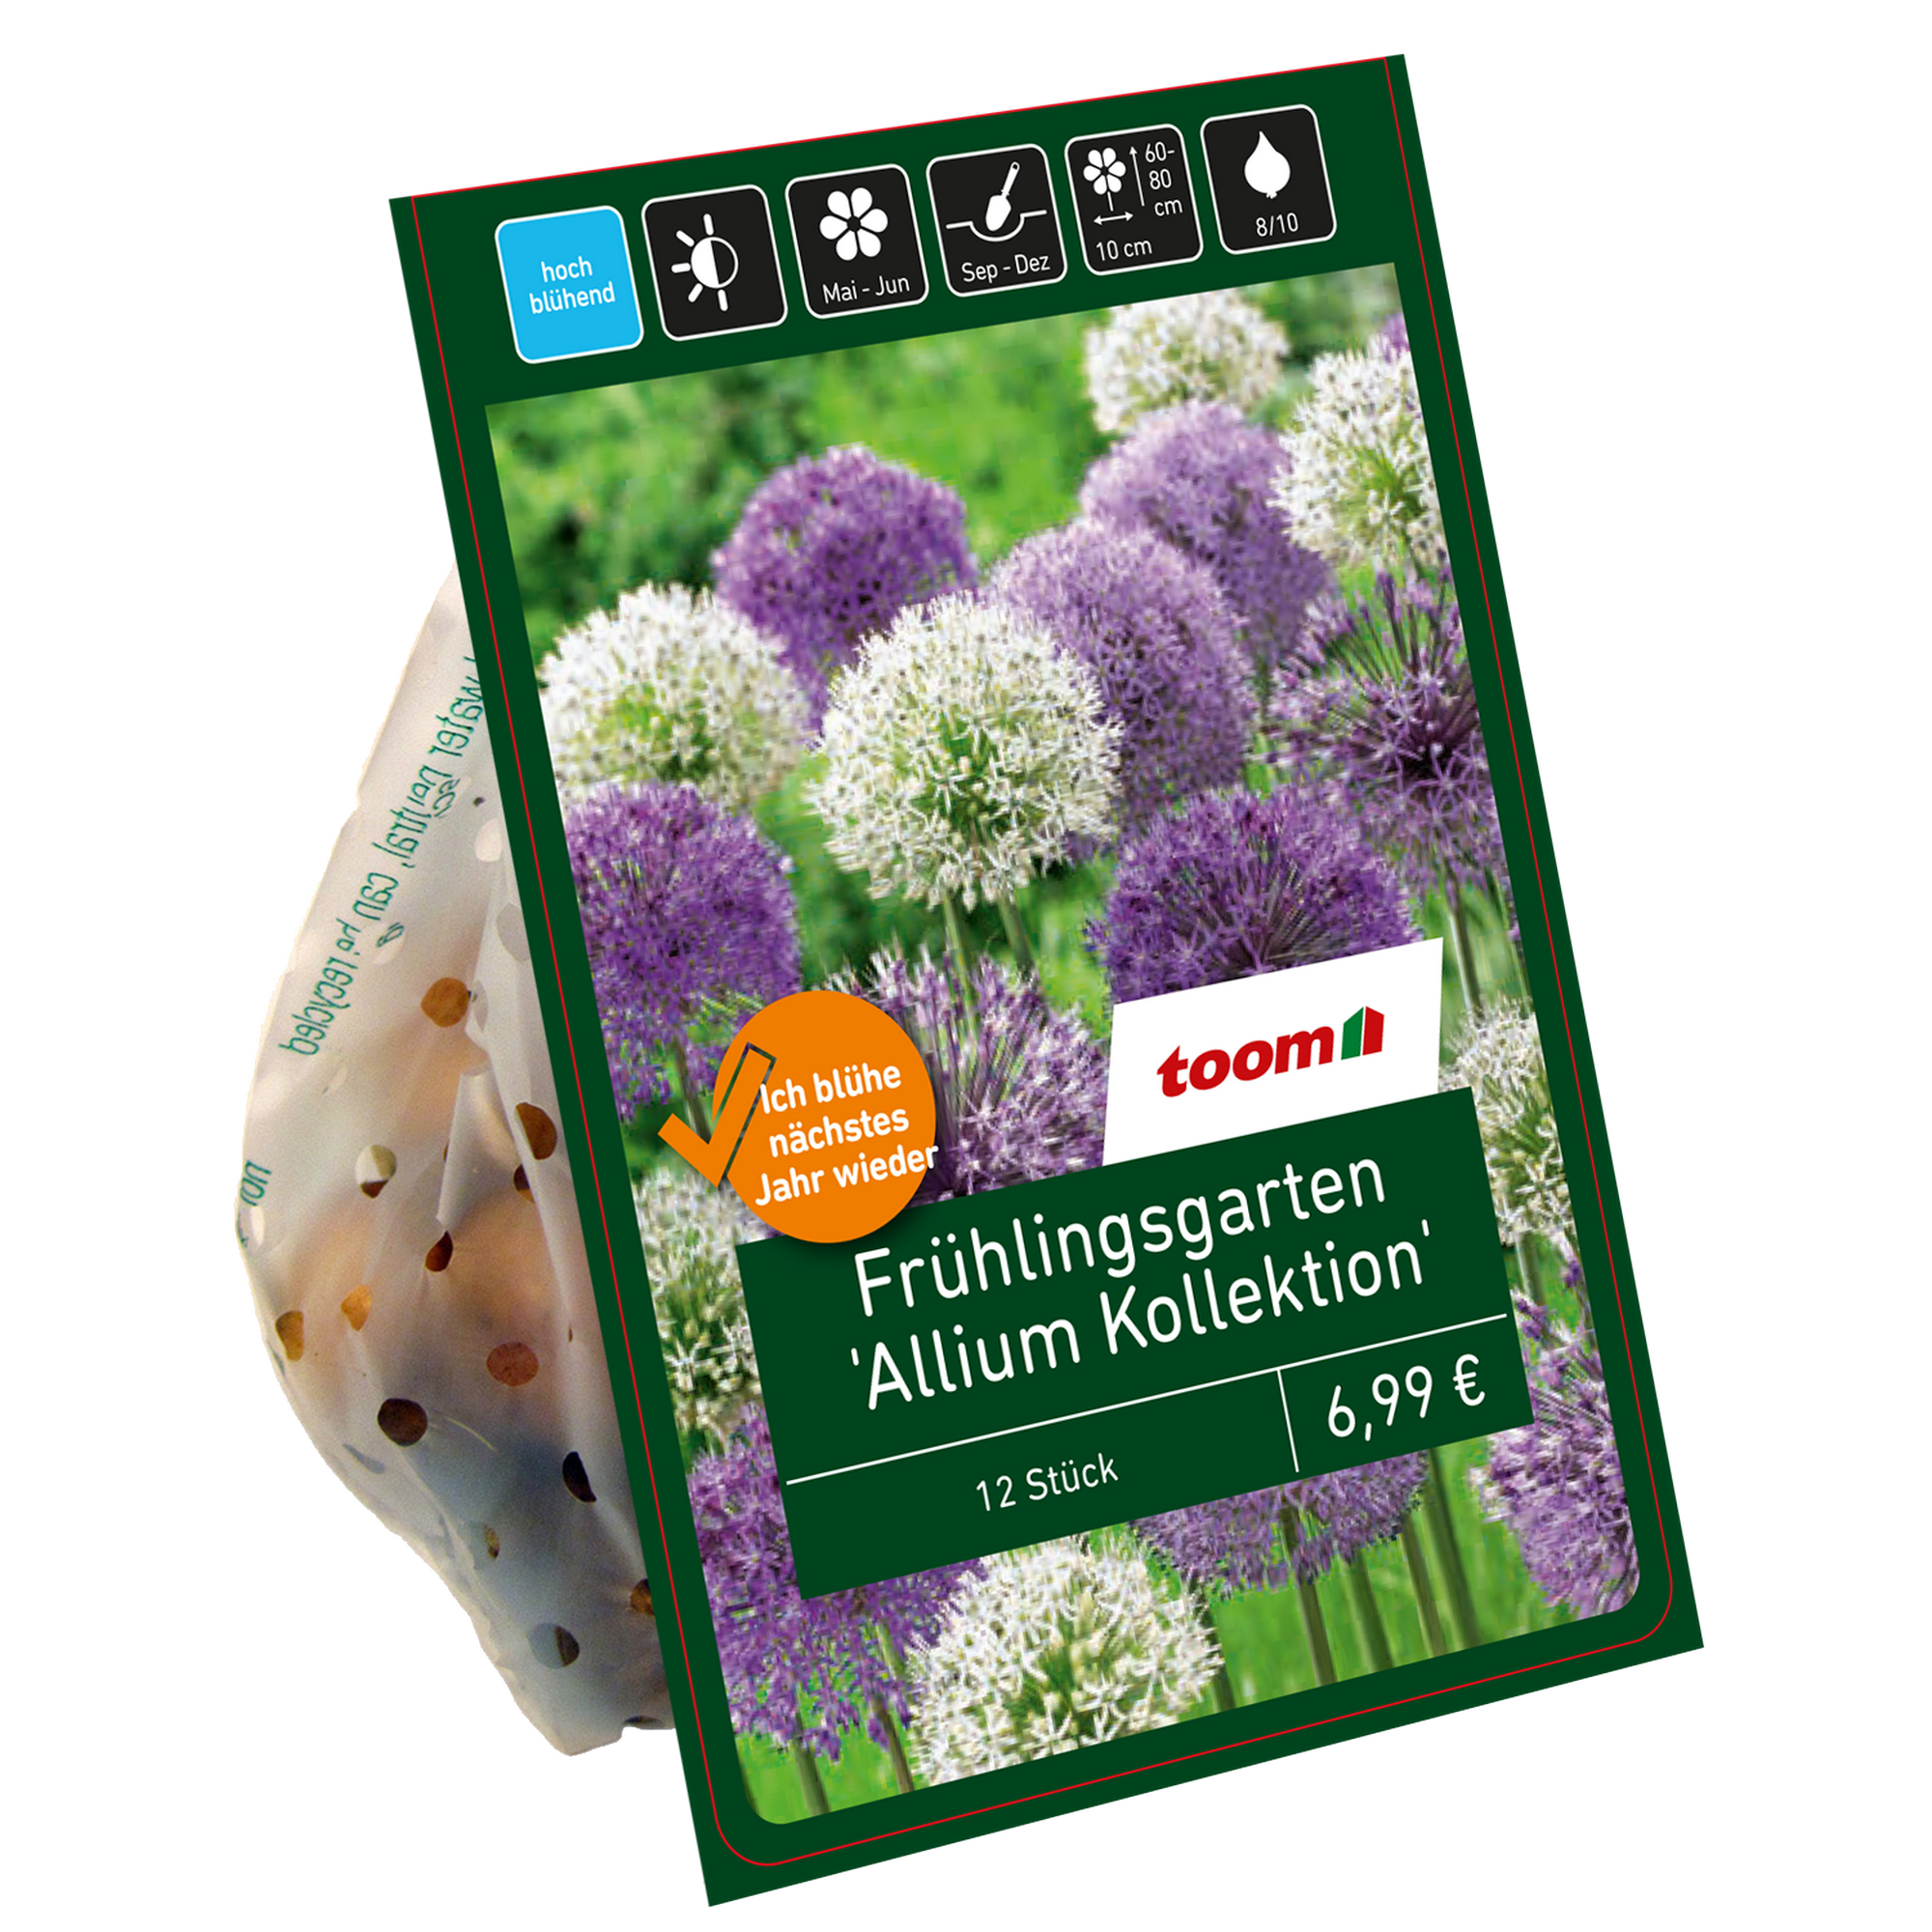 Zierlauchgarten 'Allium Kollektion' purpur-weiß-lila 15 Zwiebeln + product picture